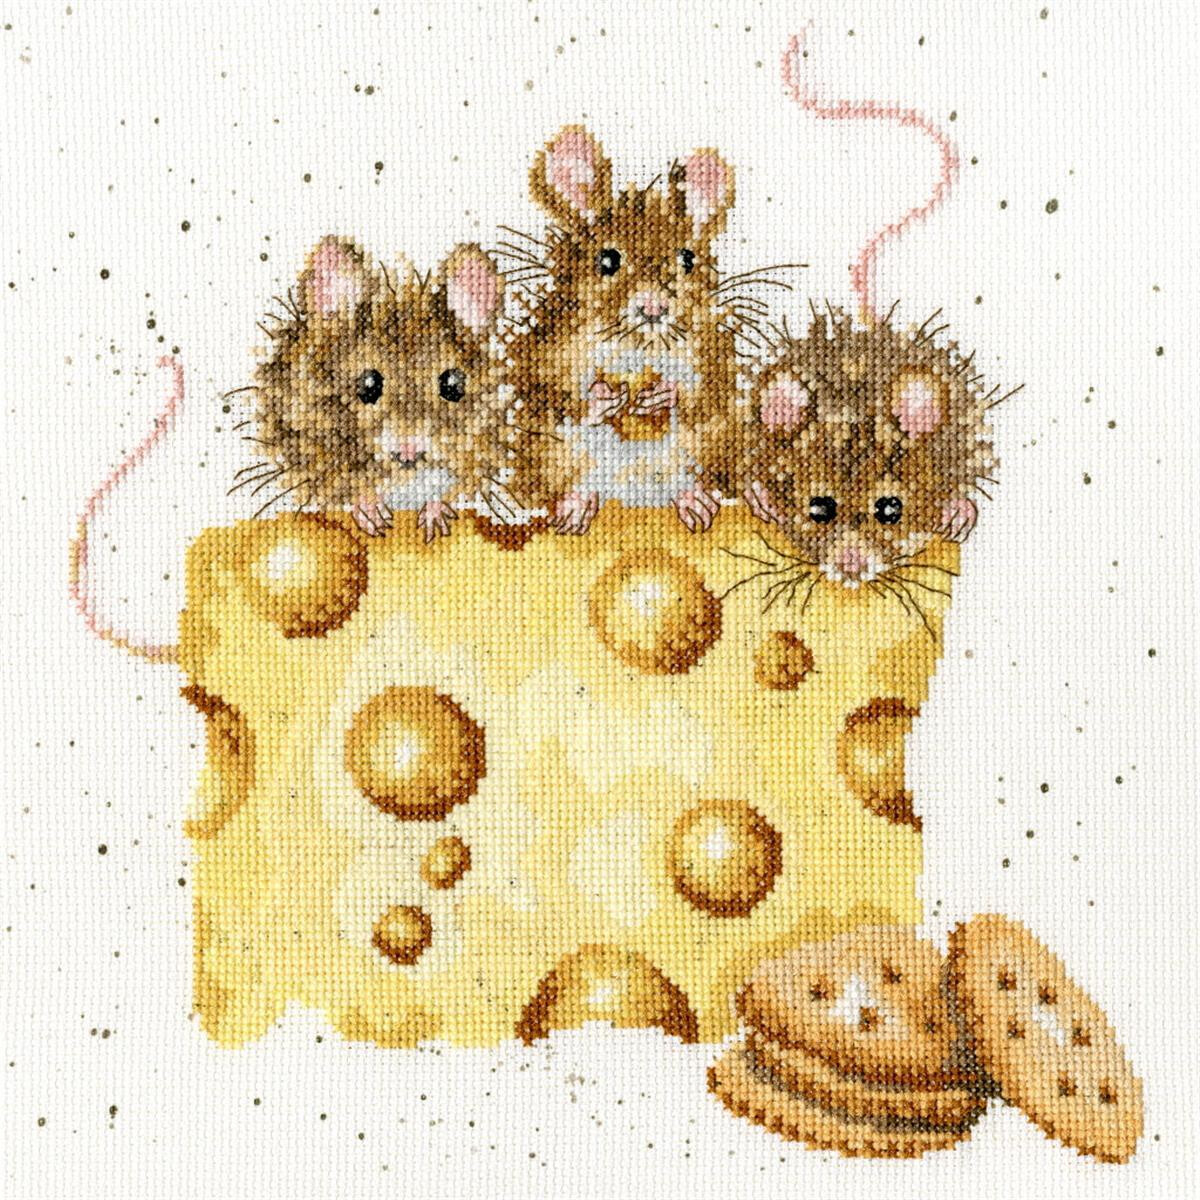 Drie kleine, pluizige muizen zitten op een groot stuk...